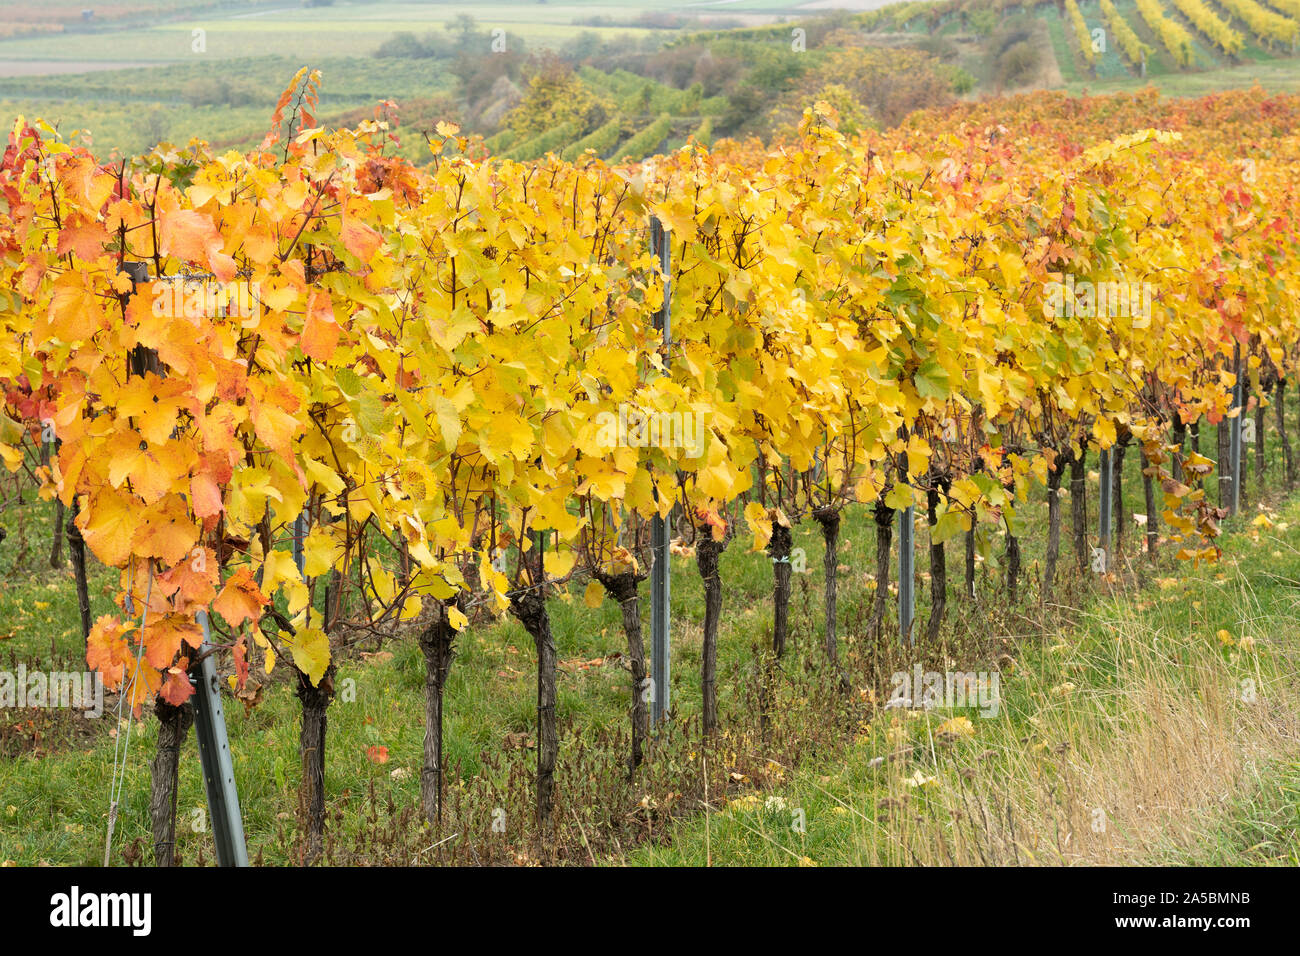 Eine Reihe von Orange und Gelb leaved europäischen Weinreben (Vitis vinifera) in einem Weinberg im Kamptal Weinanbaugebiet Niederösterreich wachsenden Stockfoto